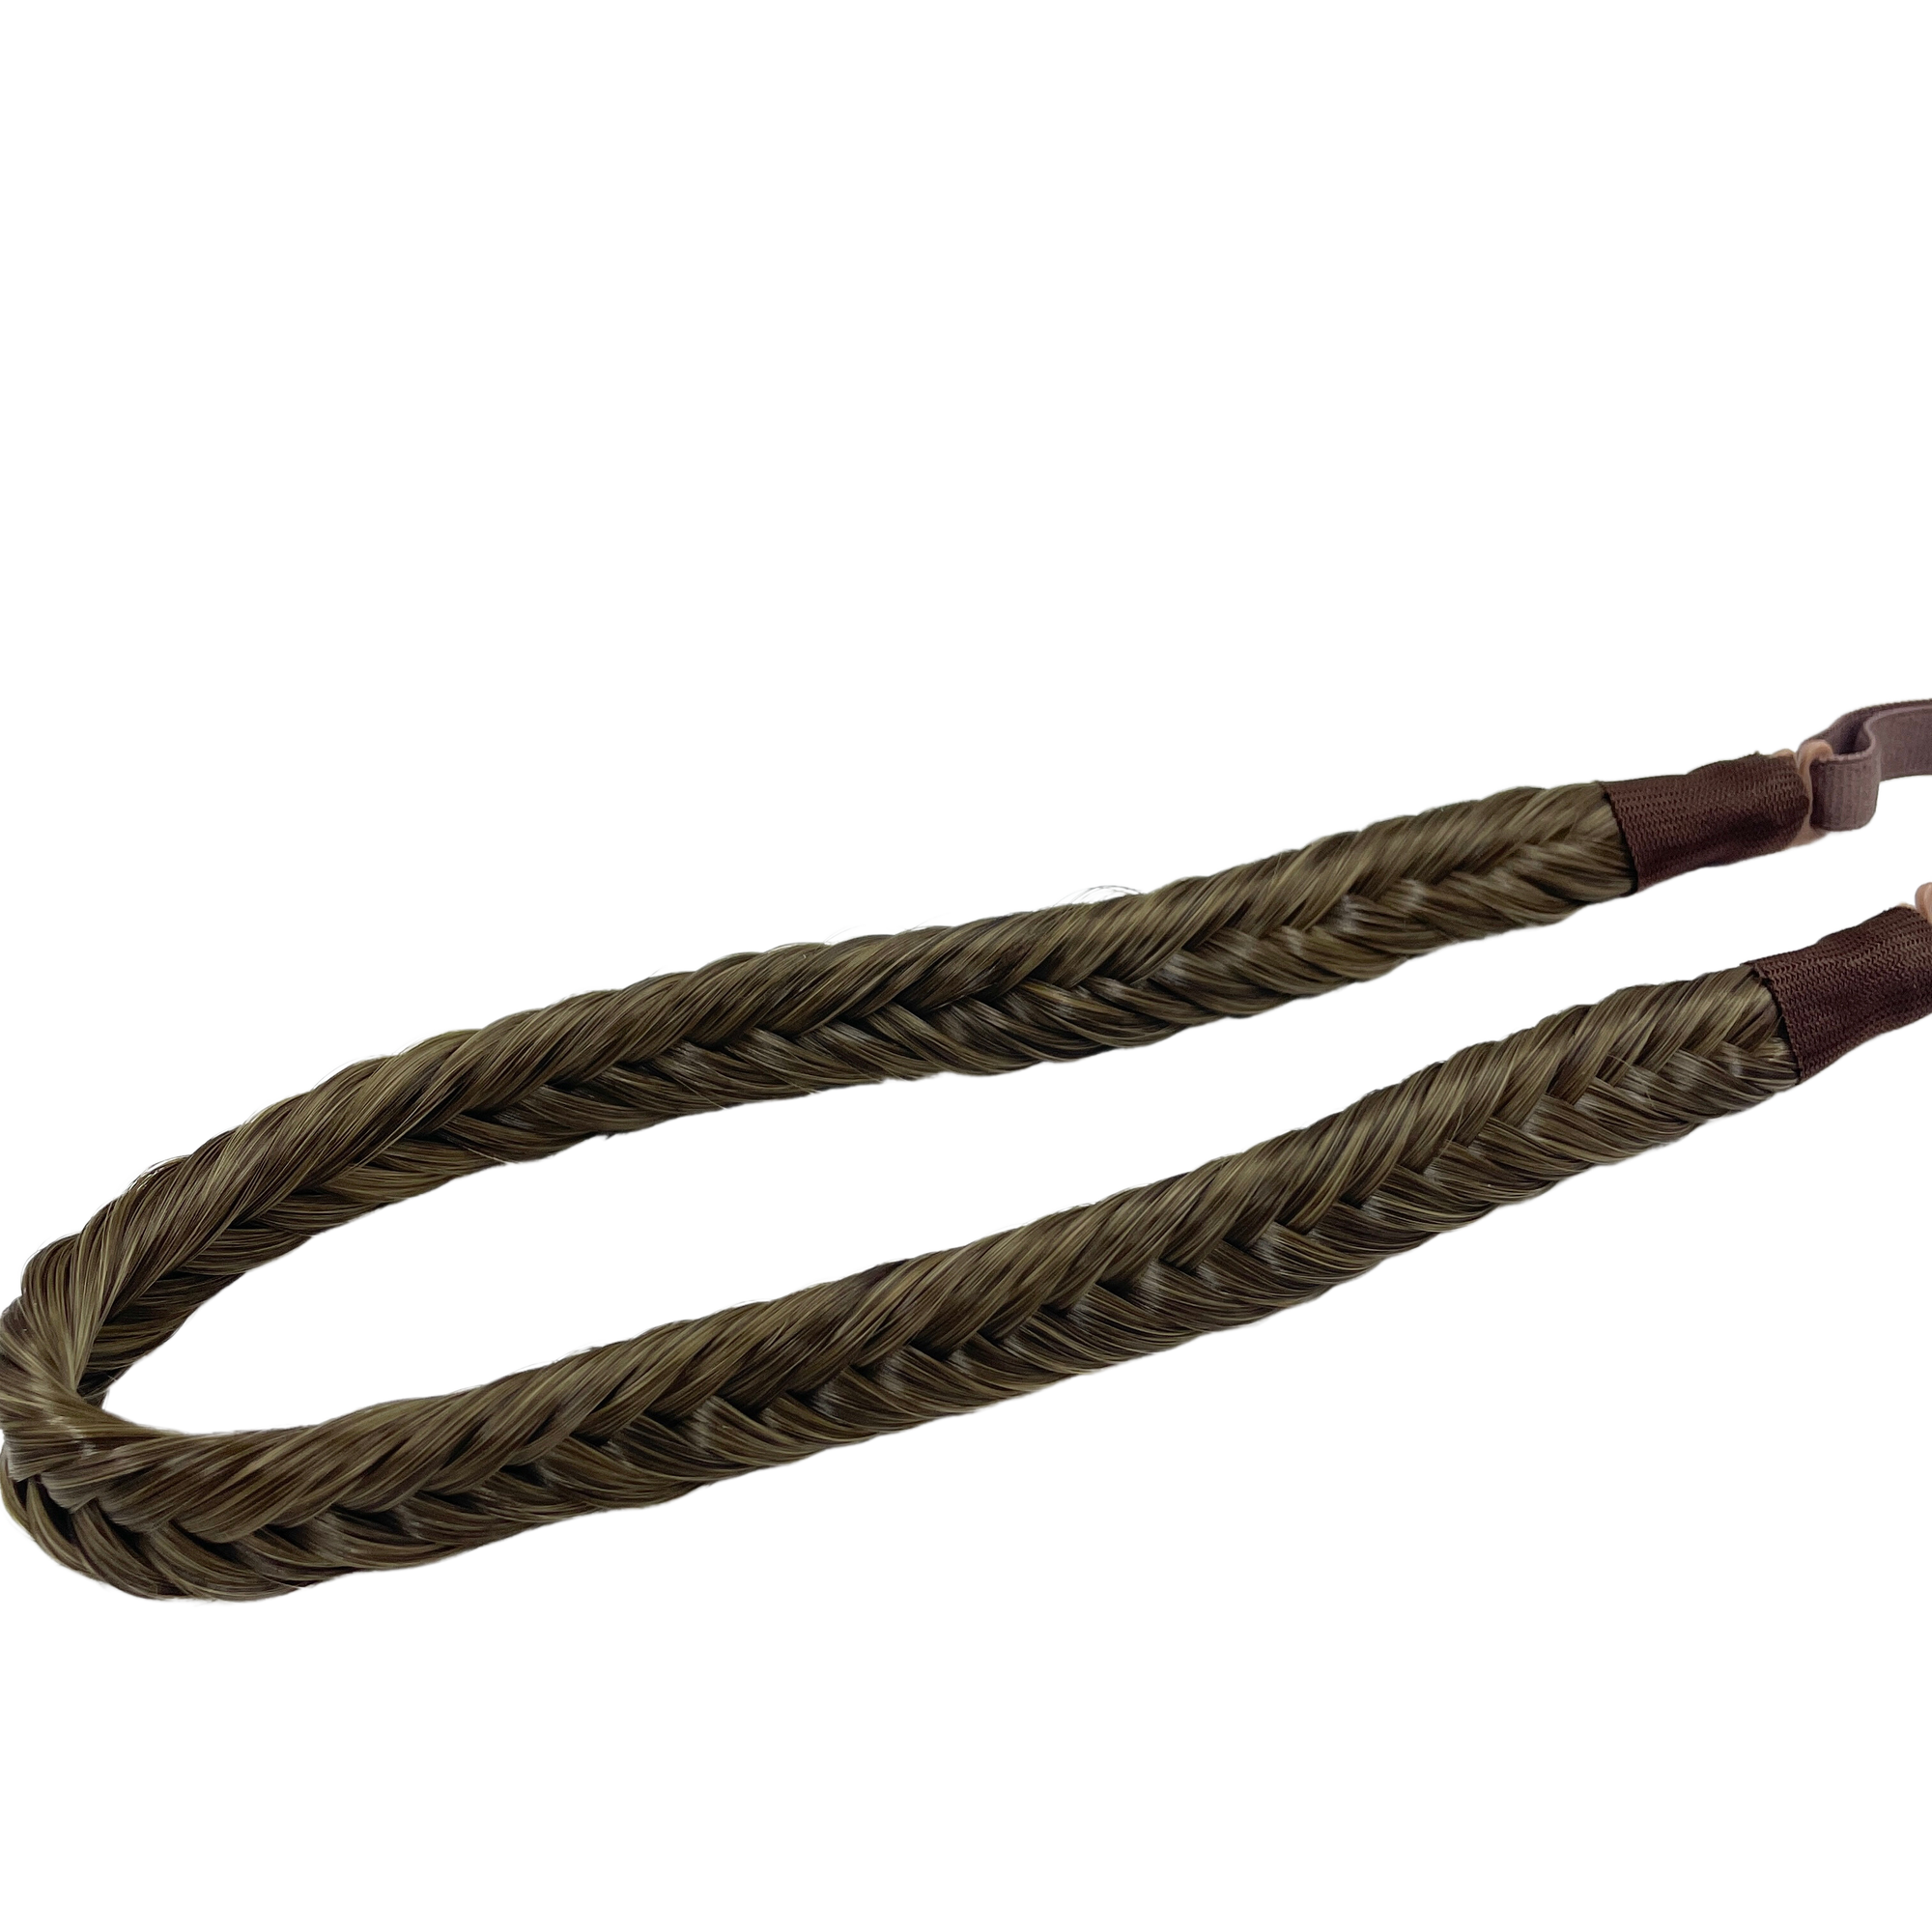 image of hair rehab london plait braid fishtail headband hairband in shade chestnut